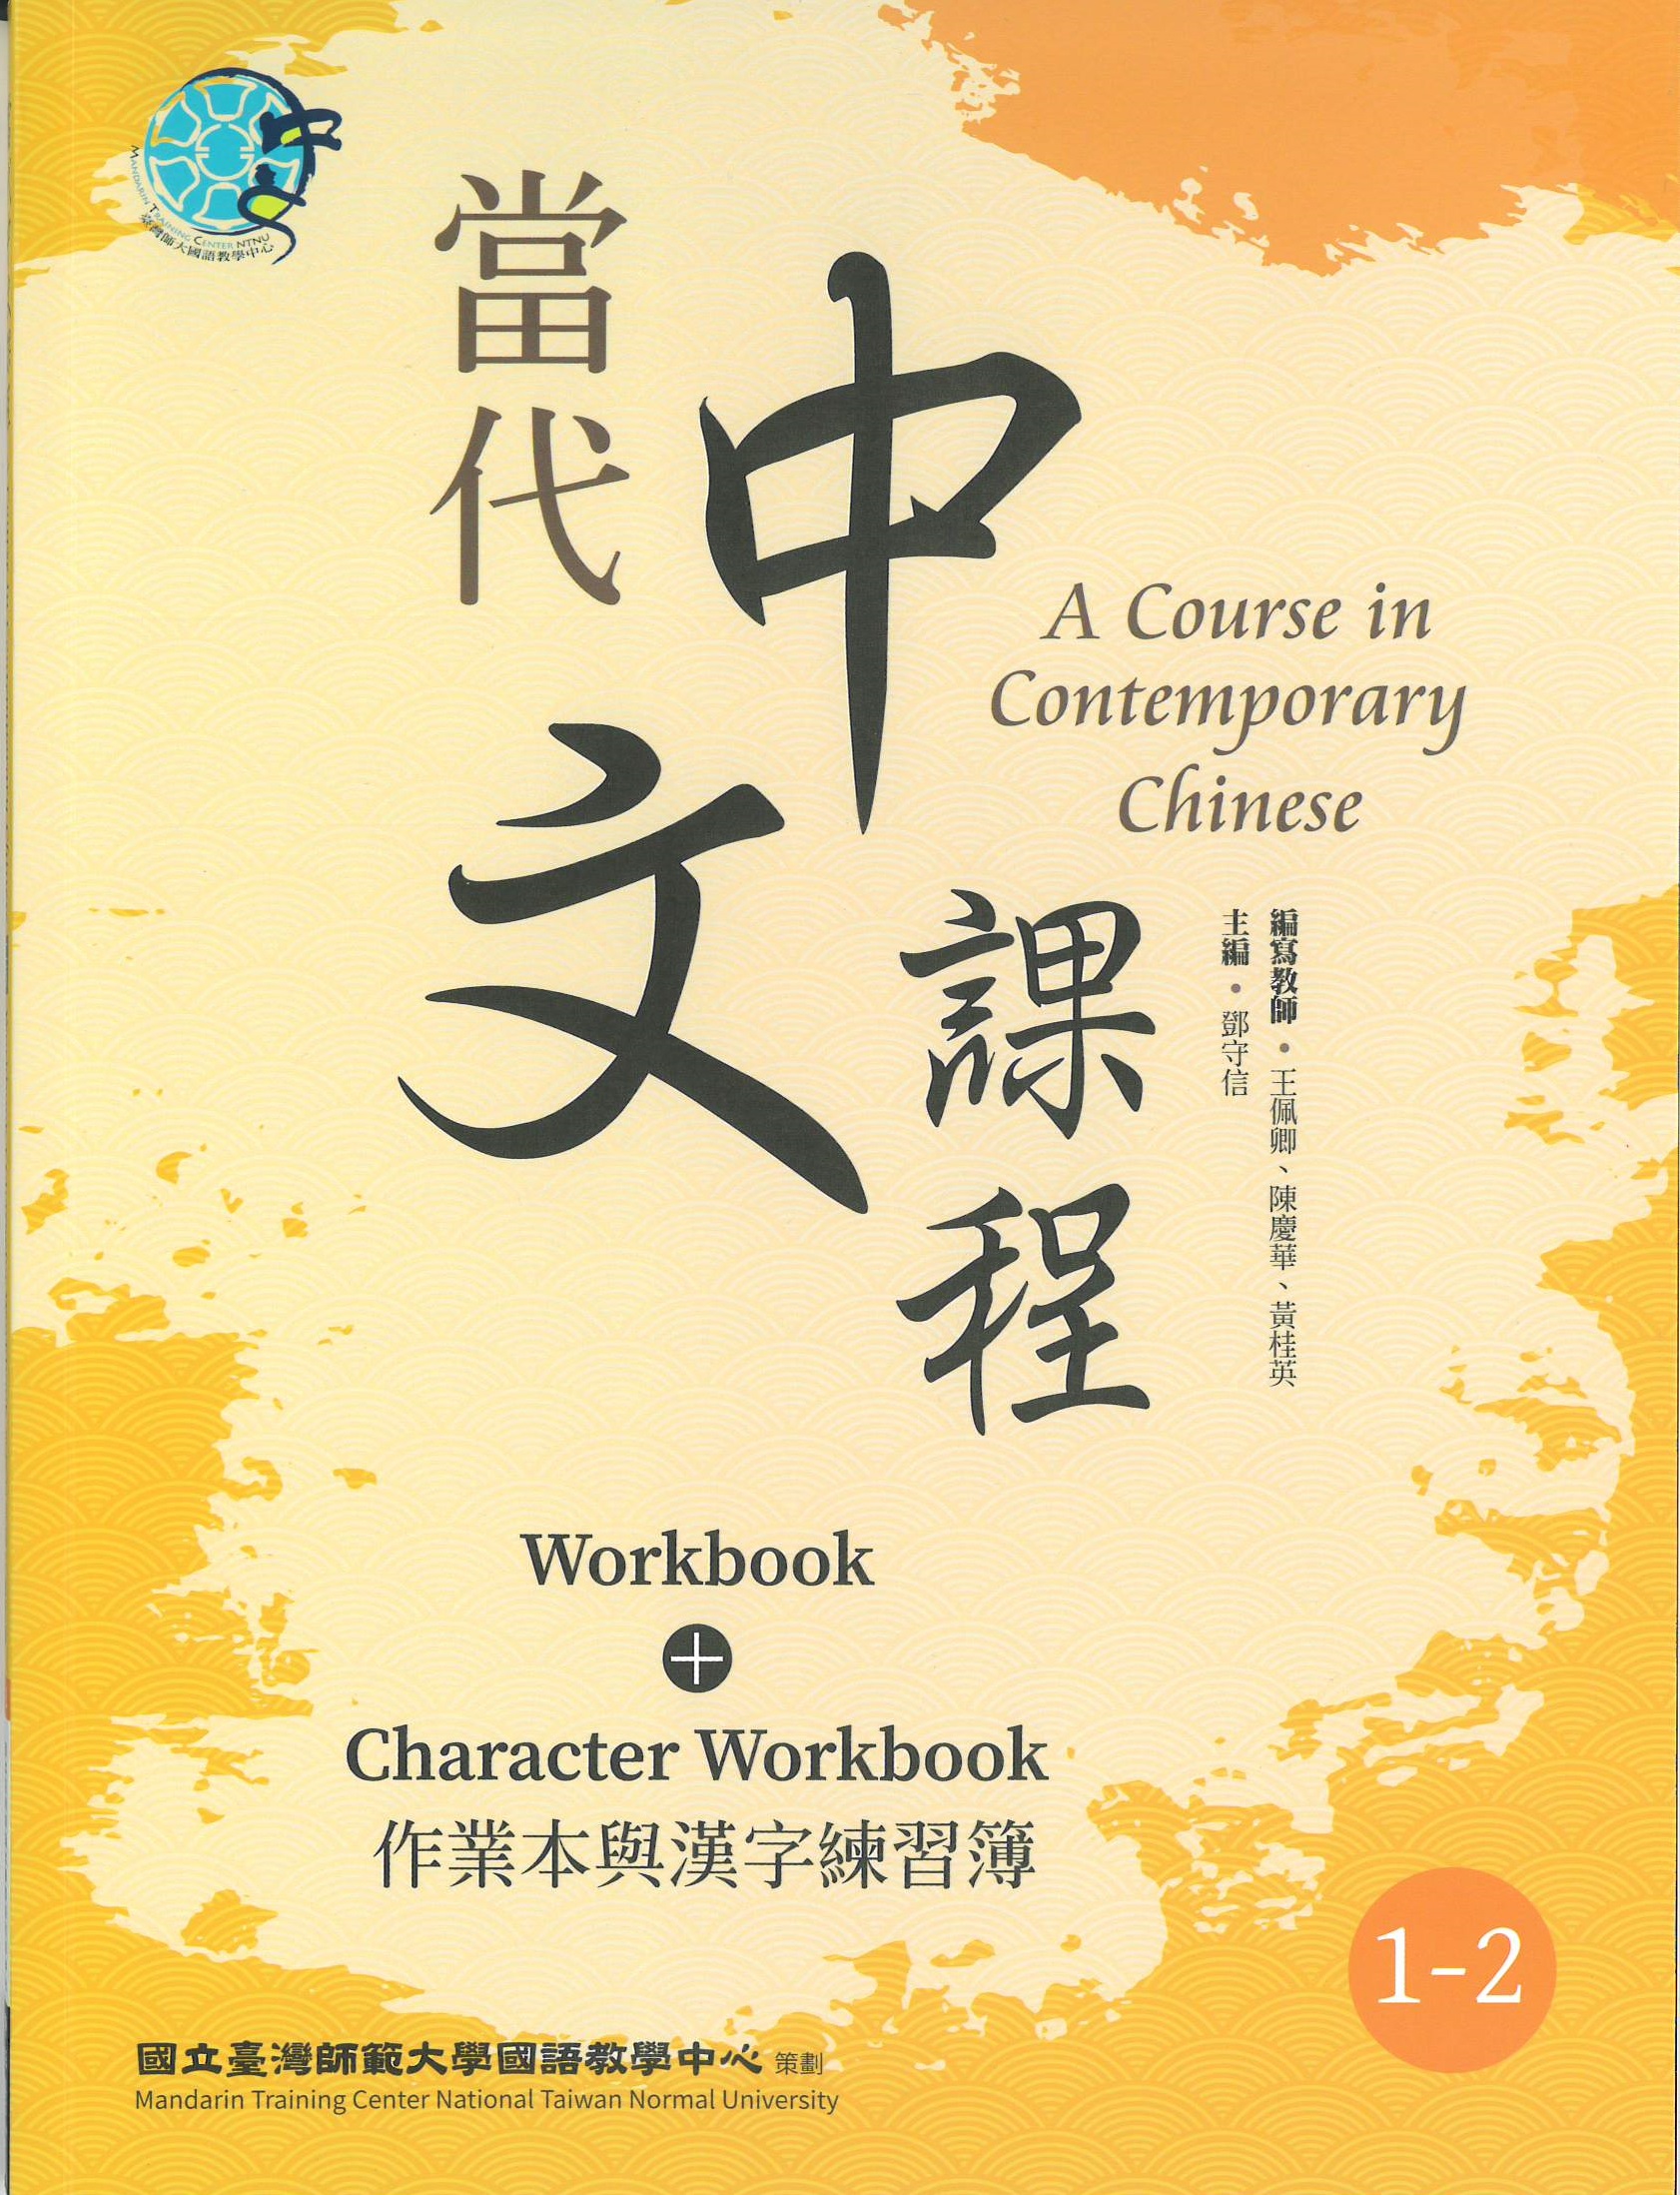 當代中文課程(1-2) : 作業本與漢字練習簿(二版) = A course in contemporary Chinese : workbook+character workbook.